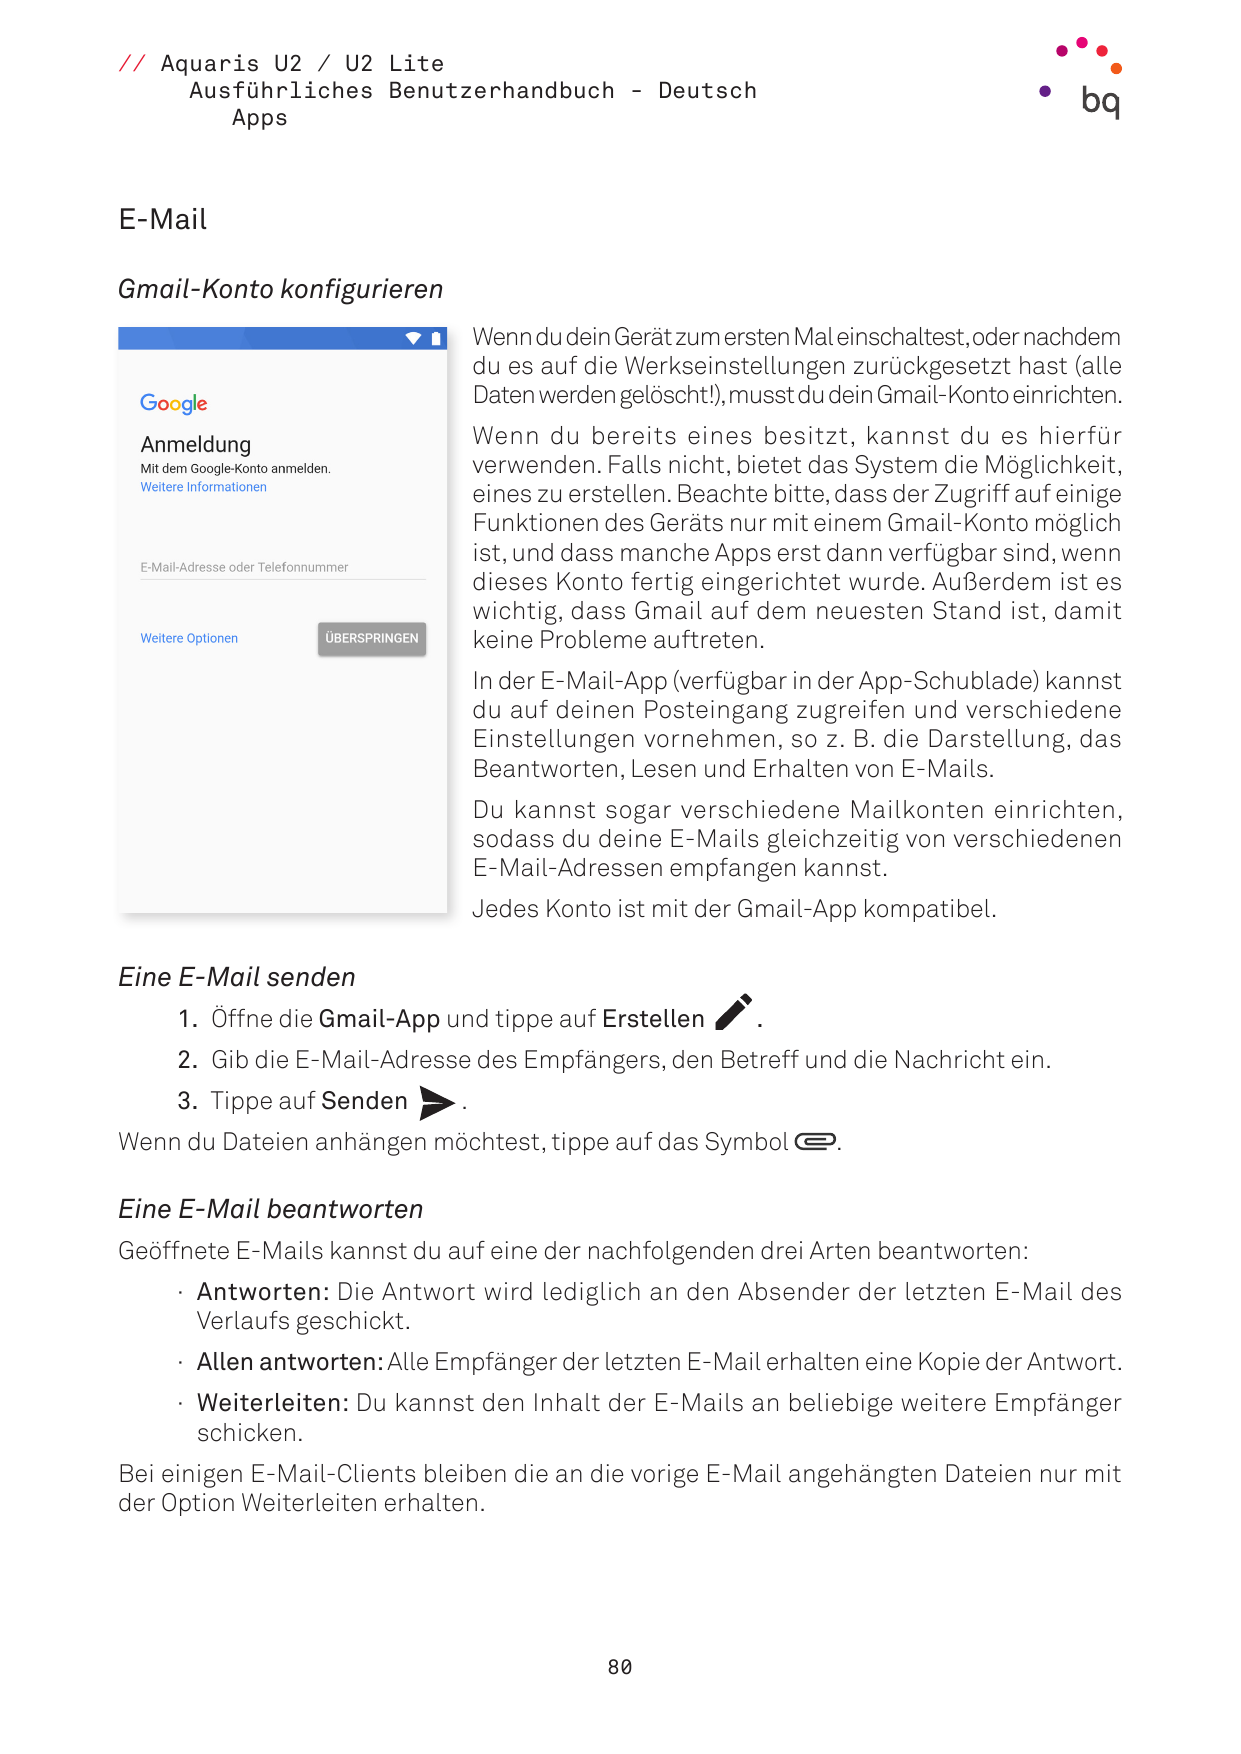 // Aquaris U2 / U2 LiteAusführliches Benutzerhandbuch - DeutschAppsE-MailGmail-Konto konfigurierenWenn du dein Gerät zum ersten 